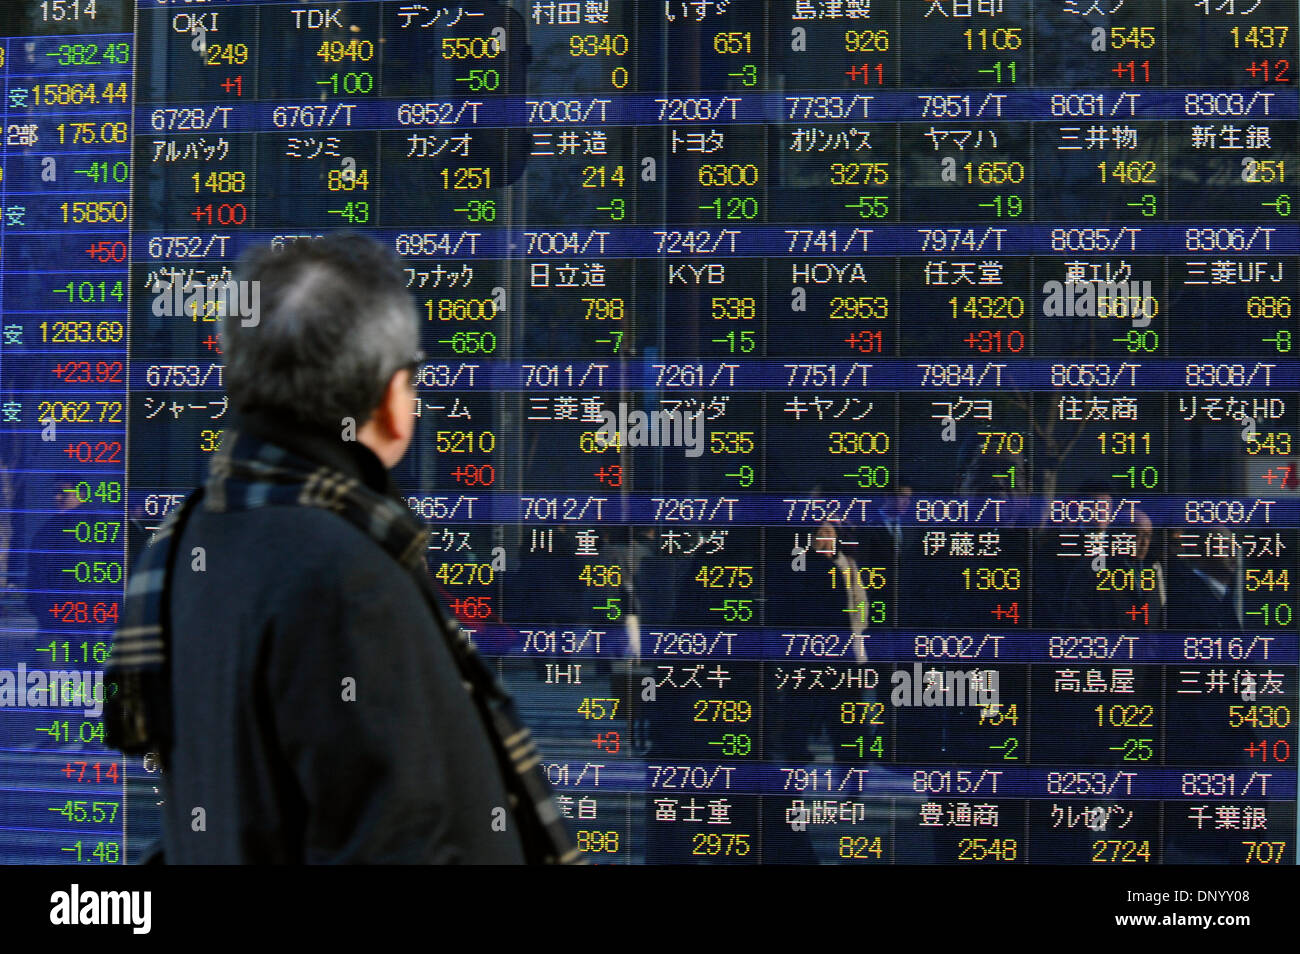 Tokio, Japón. El 6 de enero de 2014. Las existencias de Tokio caer más de 350 puntos el lunes, 6 de enero de 2014, el año nuevo del primer día traiding. El 225-tema Stock promedio Nikkei cayó 382.43 puntos a partir del 30 de diciembre para cerrar en 15,908.88. El yen permanece en la mitad de 104 yen marca contra el dólar y el yen 141-Nivel superior frente al euro. Crédito: Koichiro Suzuki/AFLO/Alamy Live News Foto de stock